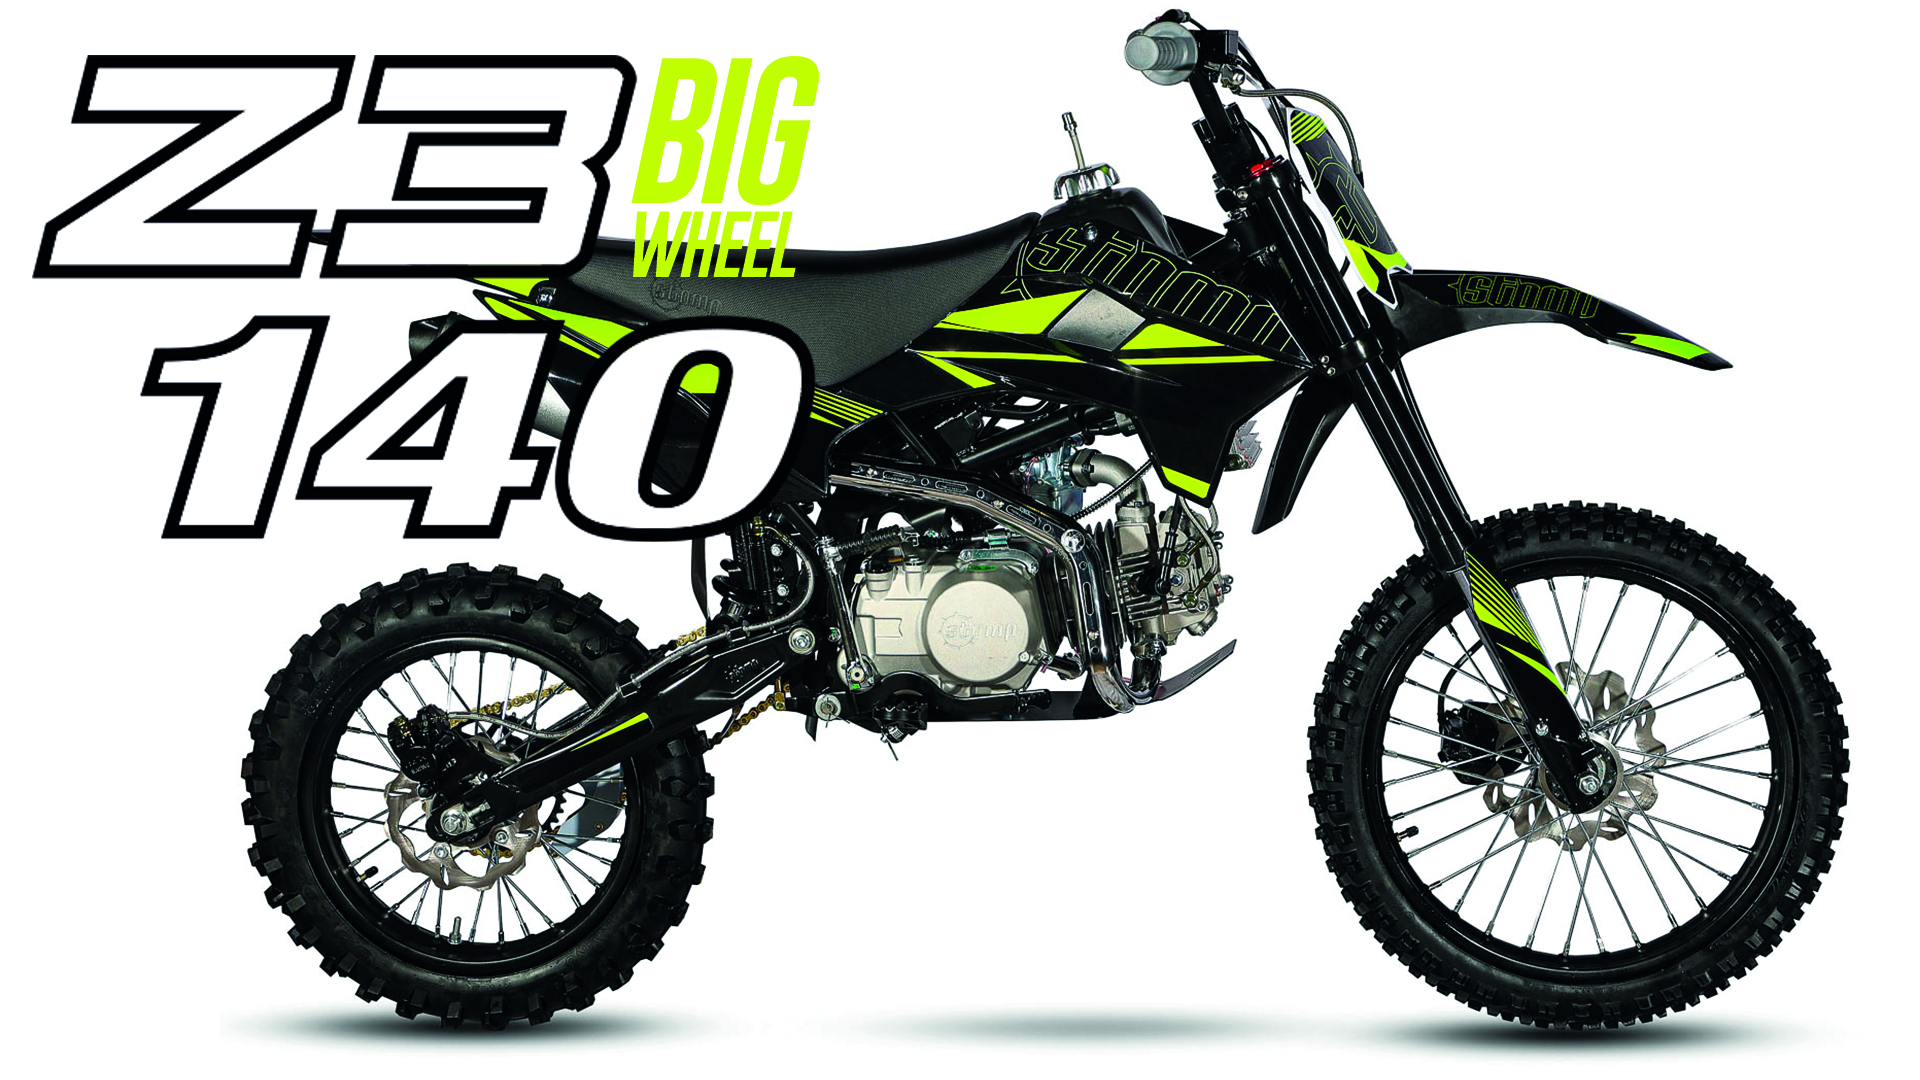 Z3 Big Wheel 140 cc pit bike